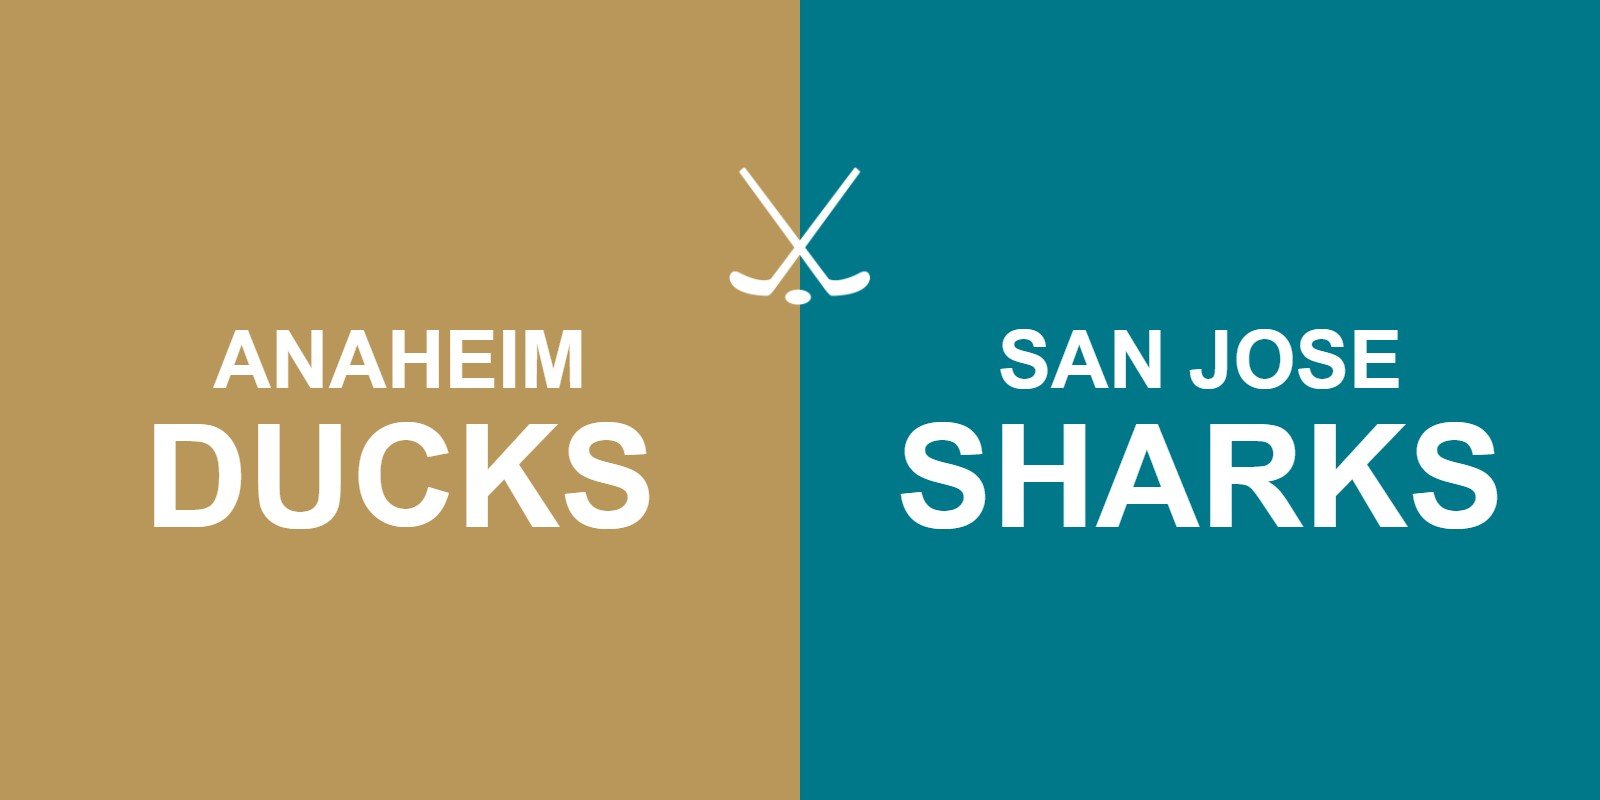 Ducks vs Sharks